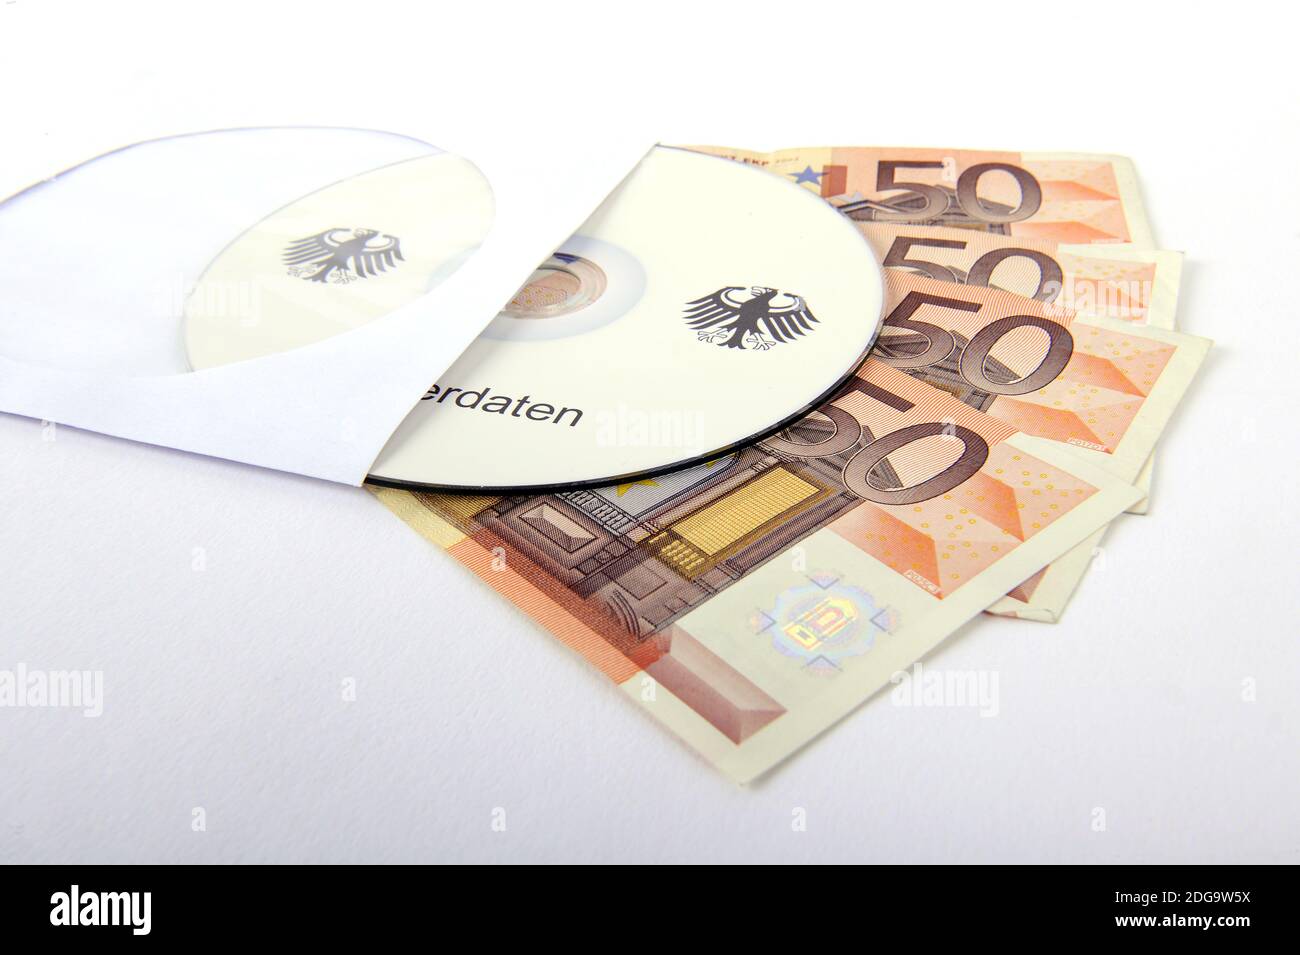 CD, Geldscheine, 50 Euro Noten, Geldscheine, Symbolbild für illegalen Handel mit Steuerdaten, Kundendaten, Bankdaten, Steuerhinterziehung, Schwarzgeld Stock Photo